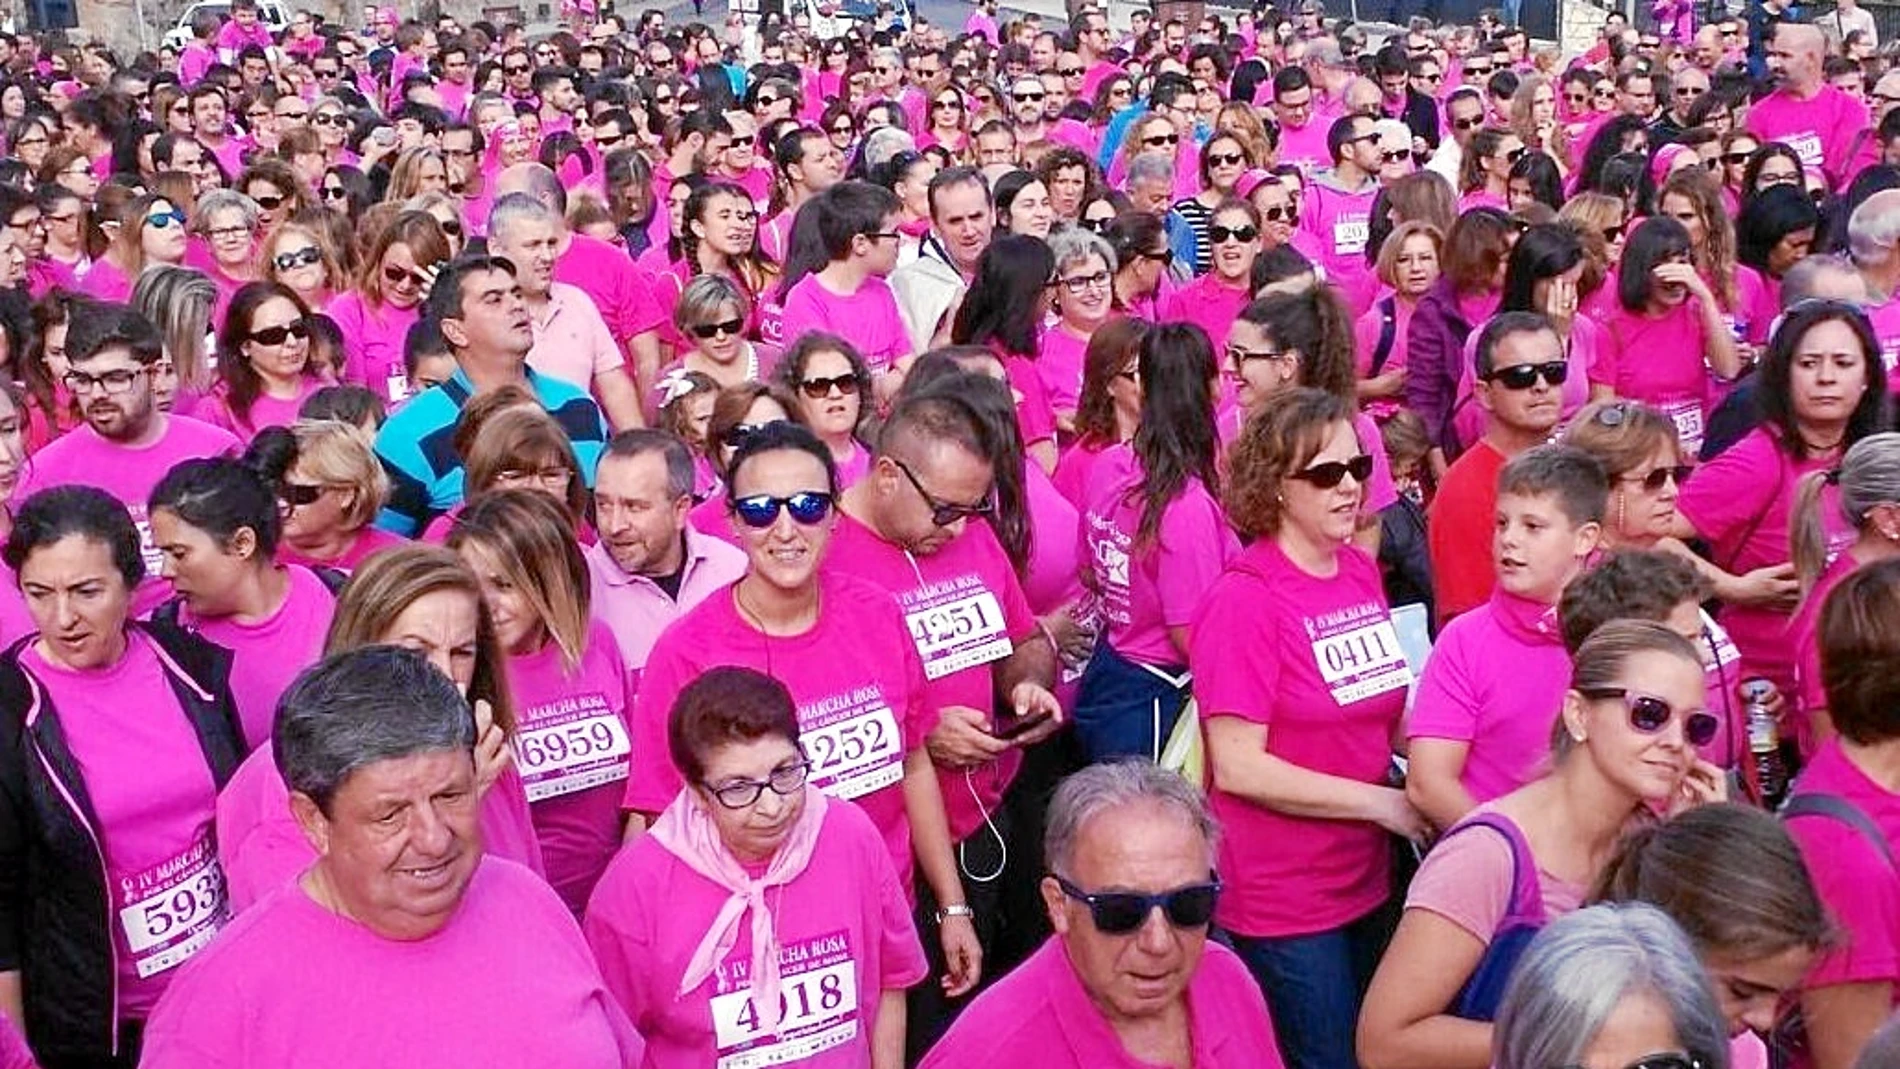 La marcha rosa es un evento organizado por la Asociación Oncológica Extremeña. En la edición de 2016 lograron vender más de 7.000 dorsales